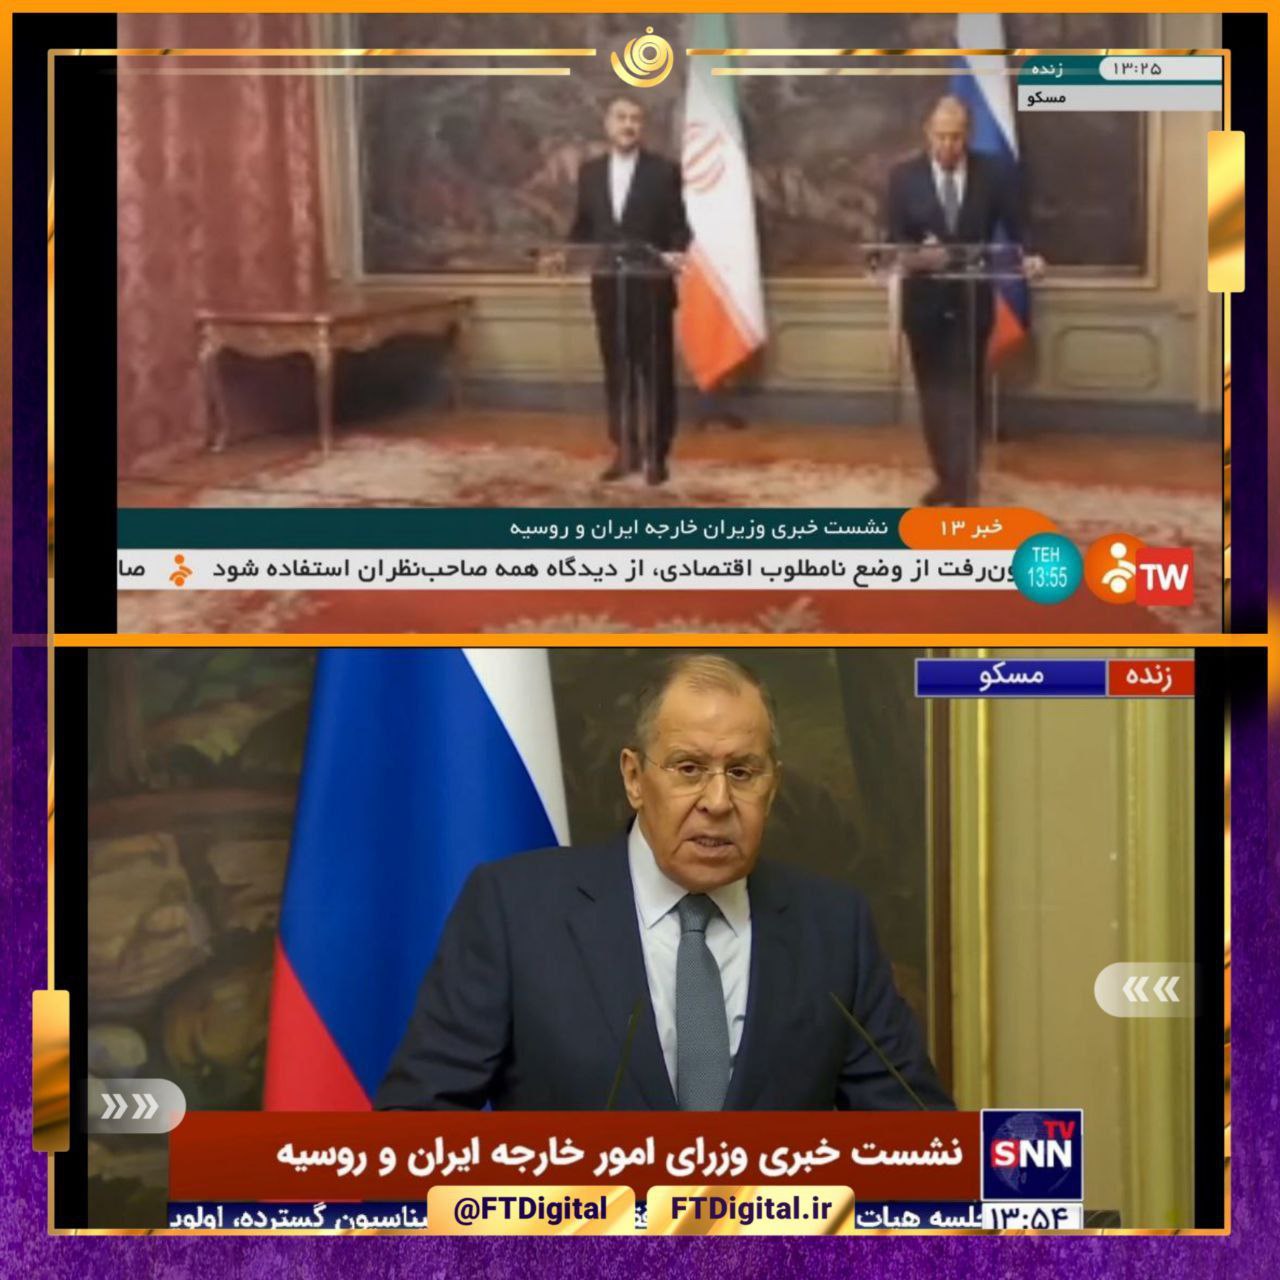 مقایسه نحوه پوشش و کیفیت تصاویر نشست خبری وزرای خارجه ایران و روسیه در شبکه خبر (عکس)